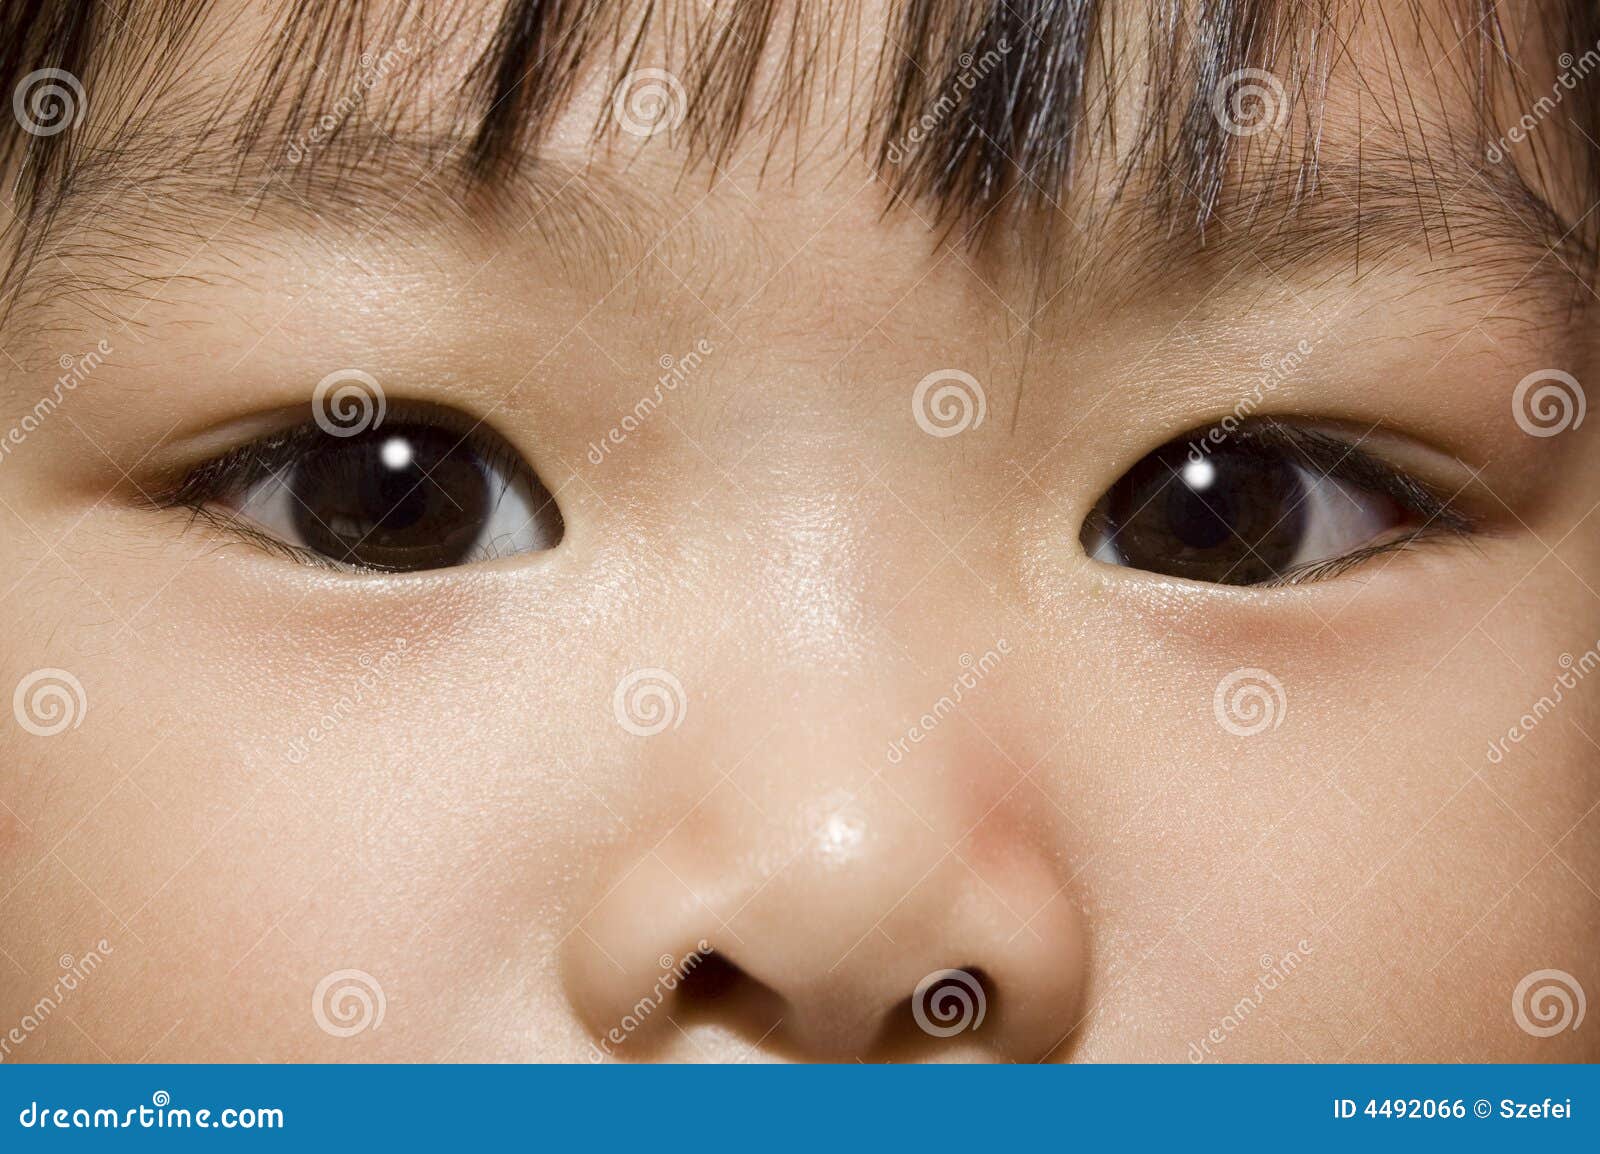 black hair brown eyes female asian